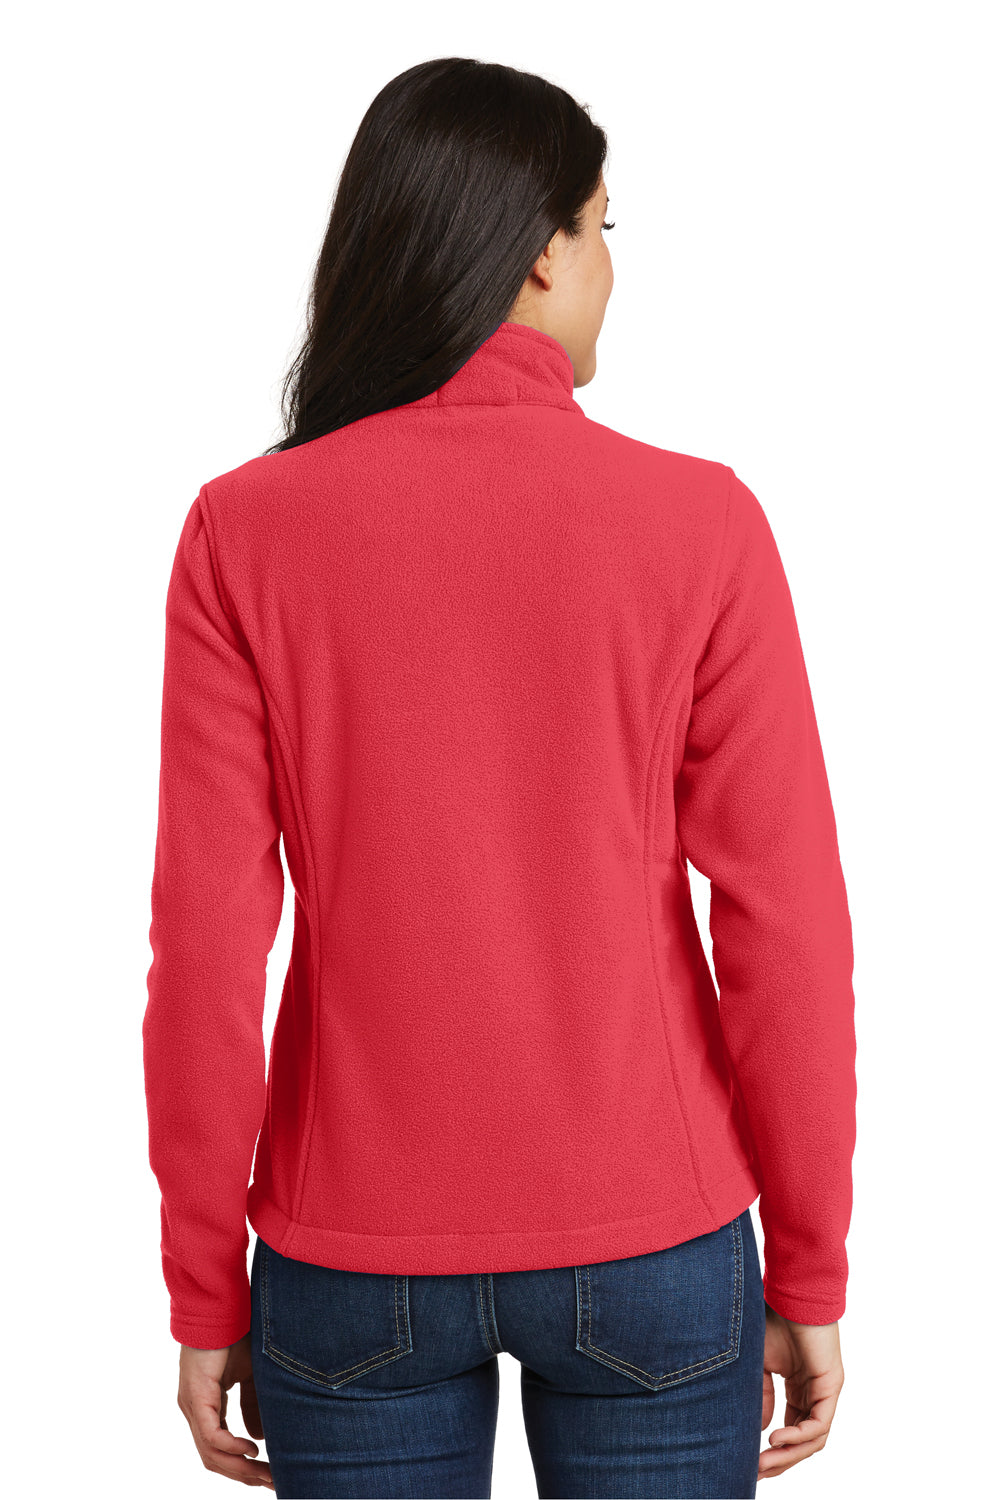 Port Authority L217 Womens Full Zip Fleece Jacket Hibiscus Pink Back